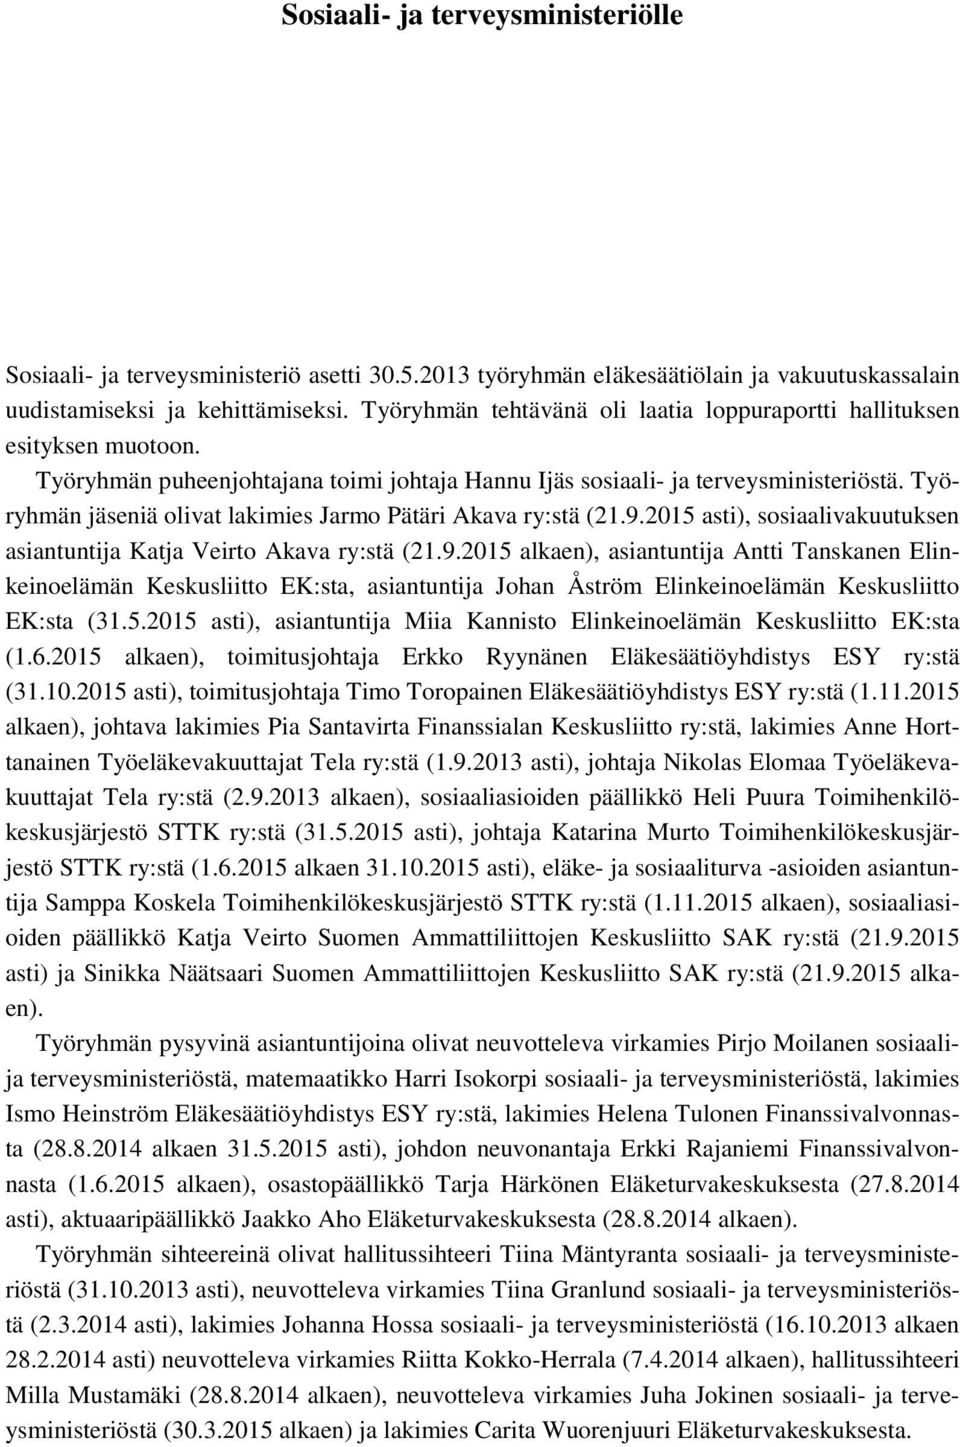 Työryhmän jäseniä olivat lakimies Jarmo Pätäri Akava ry:stä (21.9.